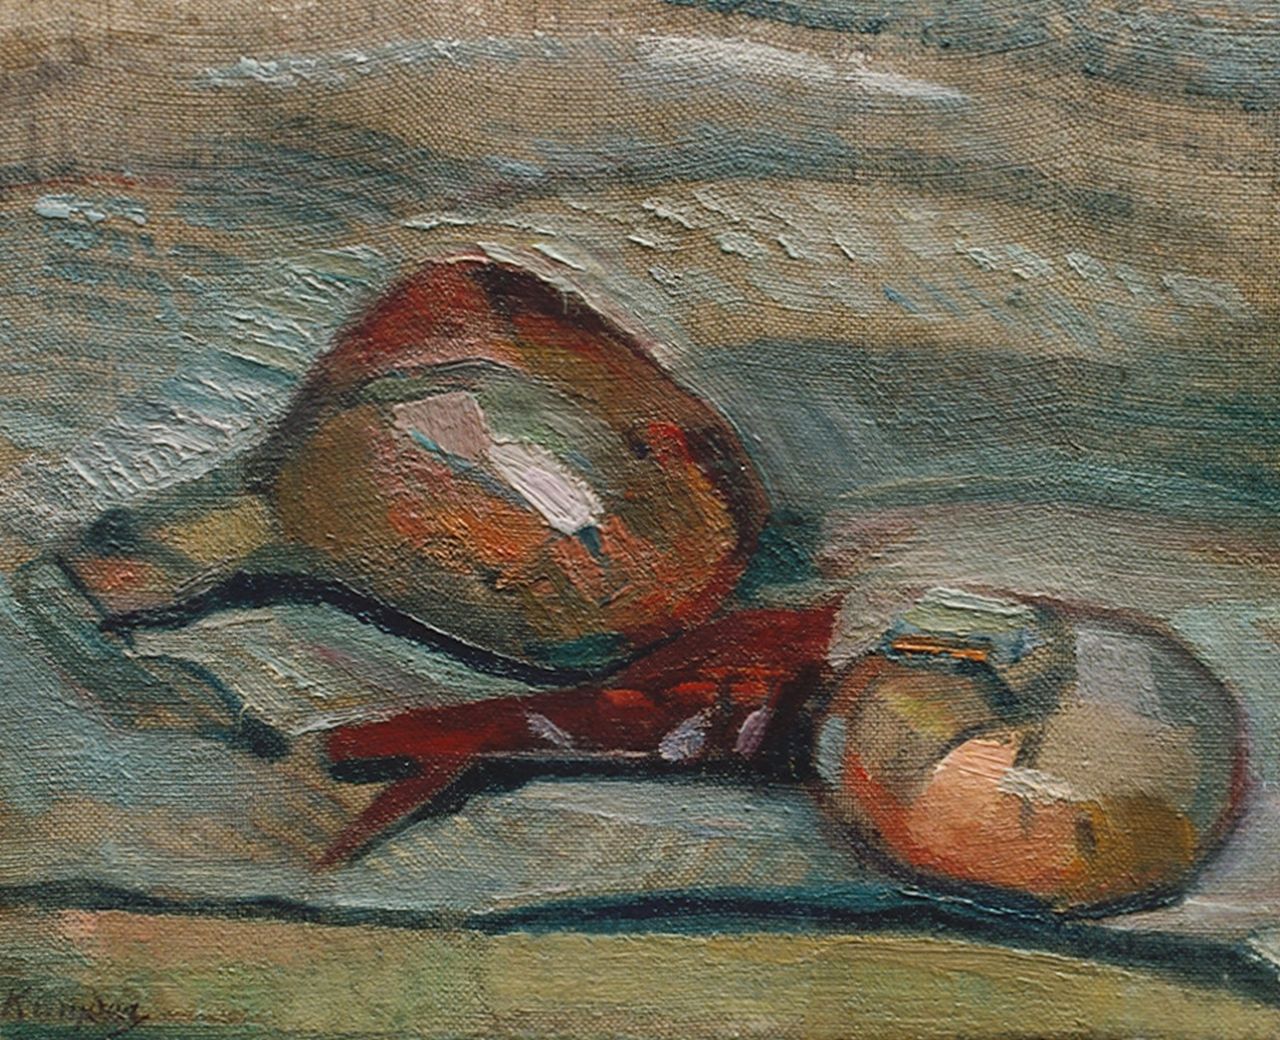 Kruyder H.J.  | 'Herman' Justus Kruyder, Stilleven met uien, olieverf op doek op paneel 21,0 x 26,0 cm, gesigneerd linksonder